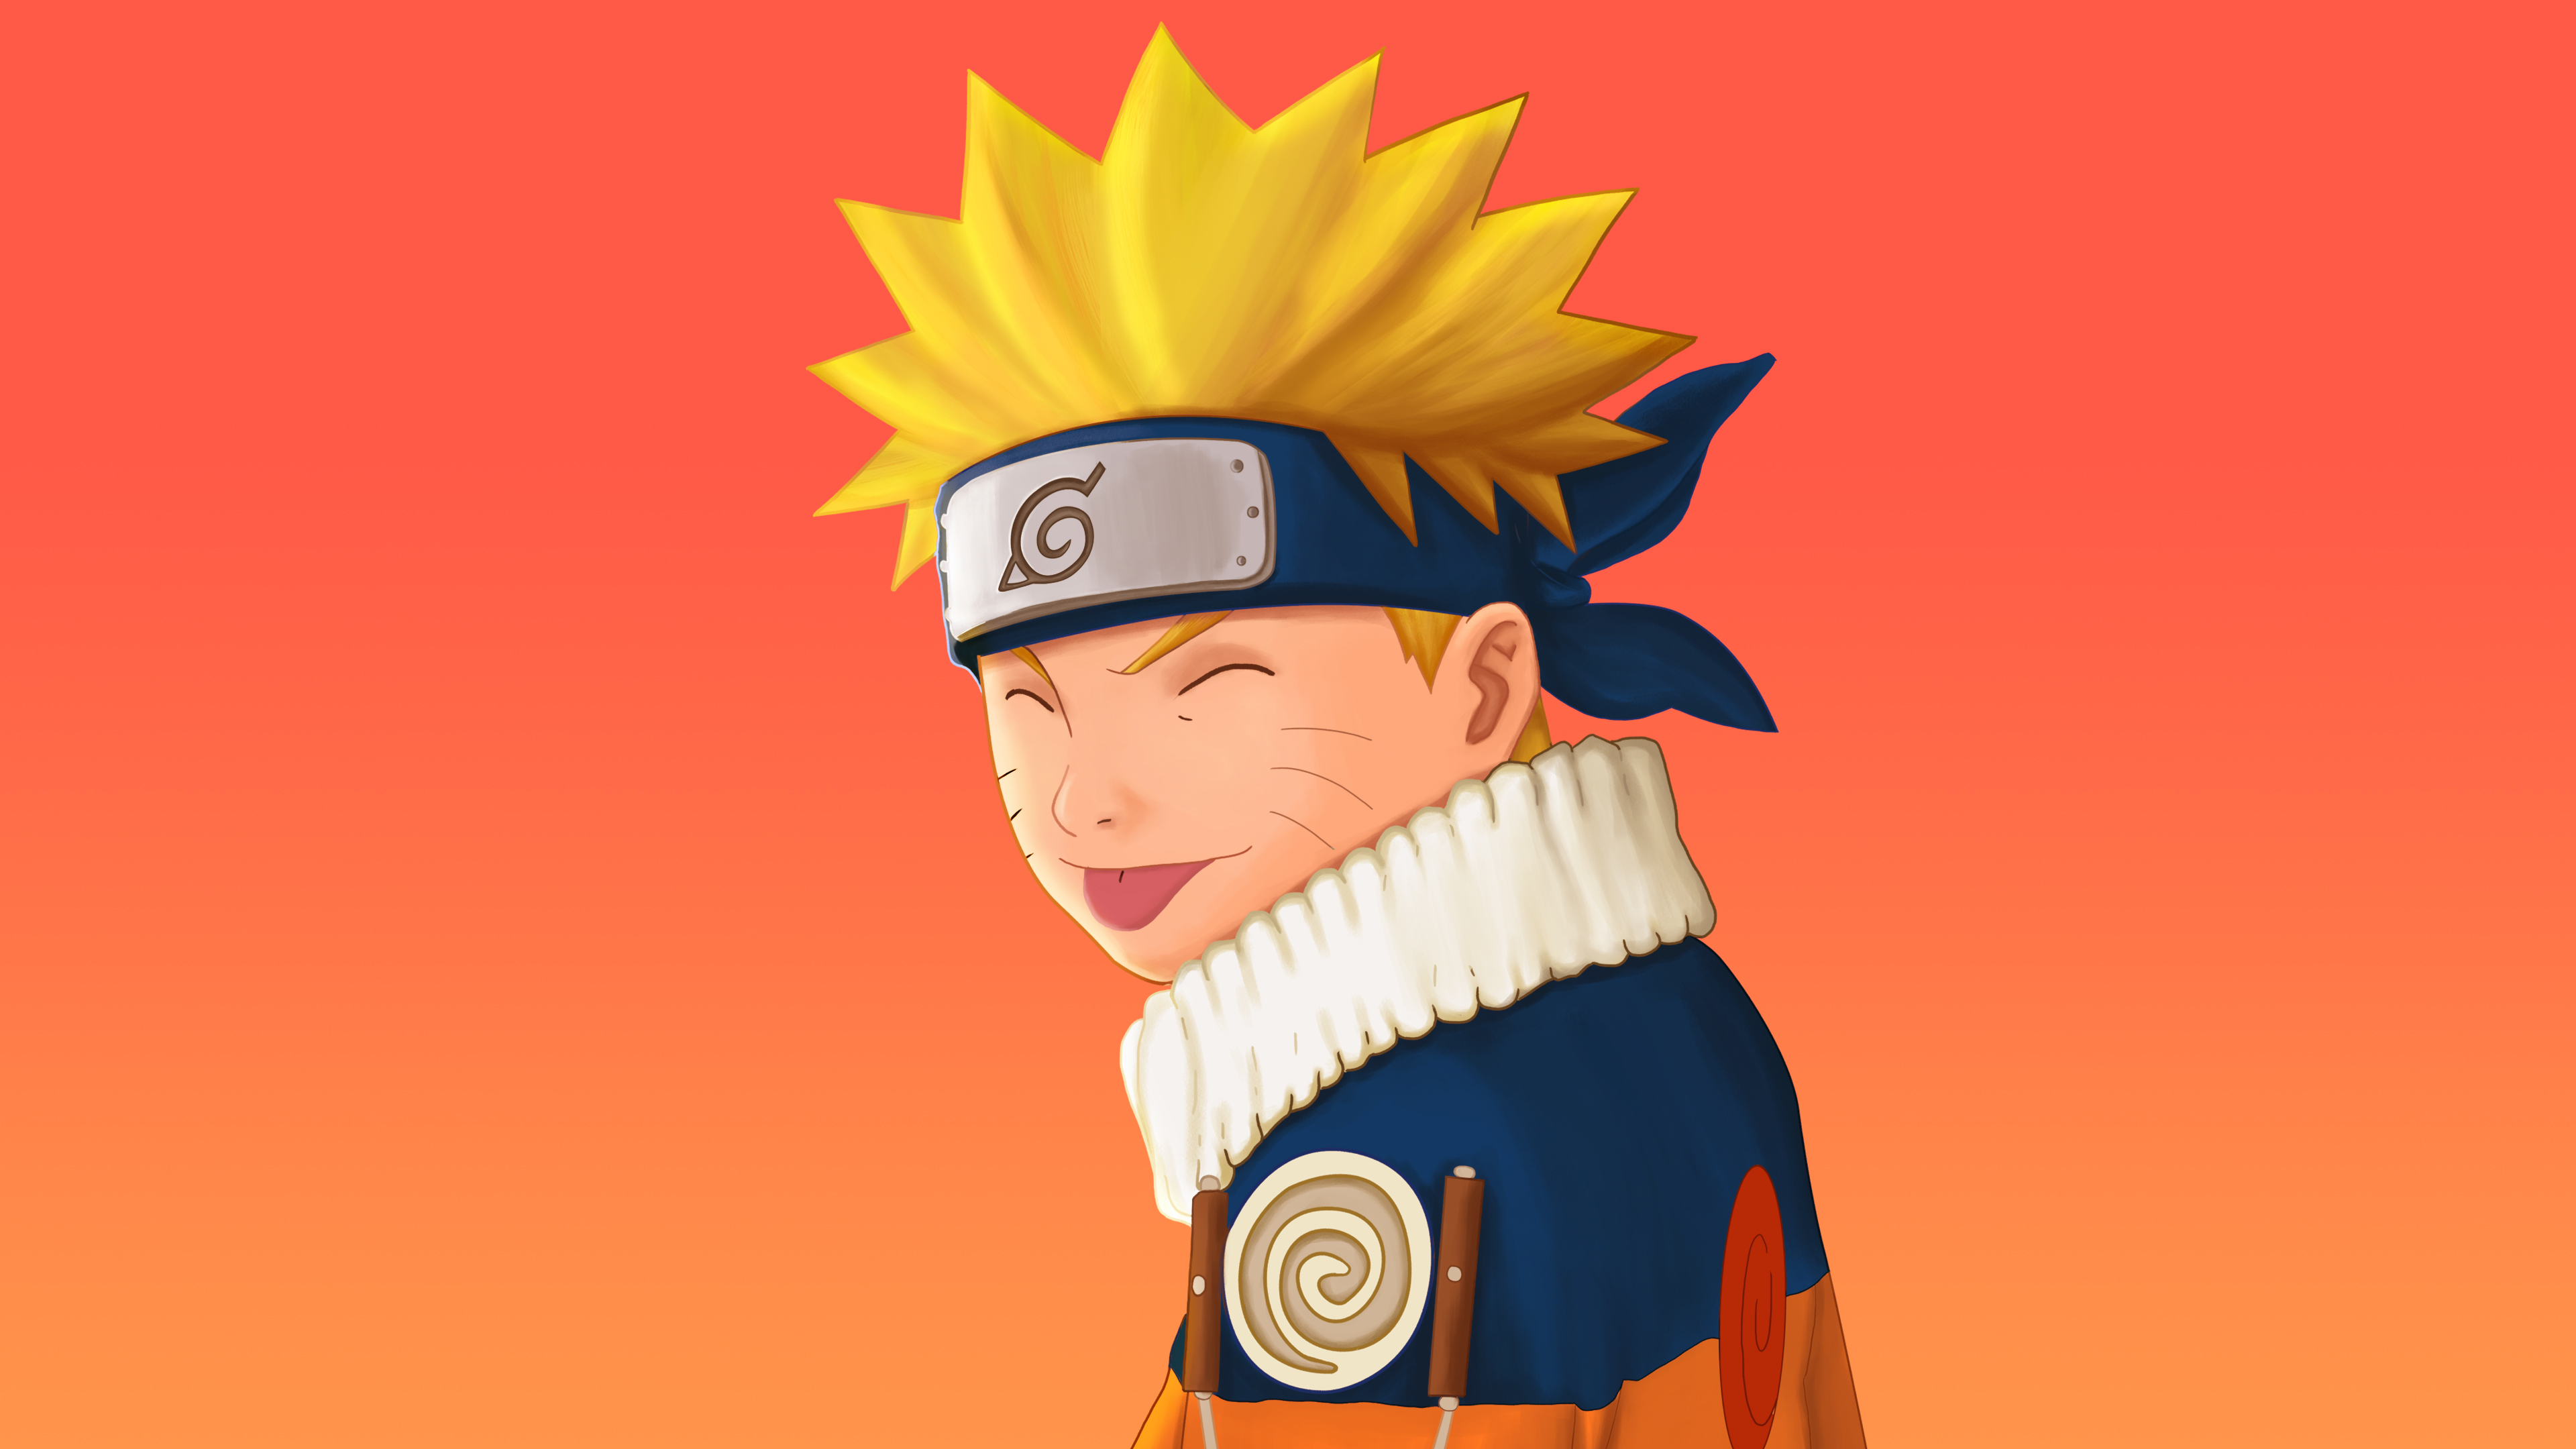 Naruto Uzumaki Cute Background sẽ là món quà tuyệt vời dành cho những fan của Naruto. Hãy để hình ảnh Naruto đáng yêu vào màn hình của bạn, đem lại cho bạn năng lượng tích cực và cảm giác yên tâm khi ngắm nhìn mỗi lần mở máy tính.